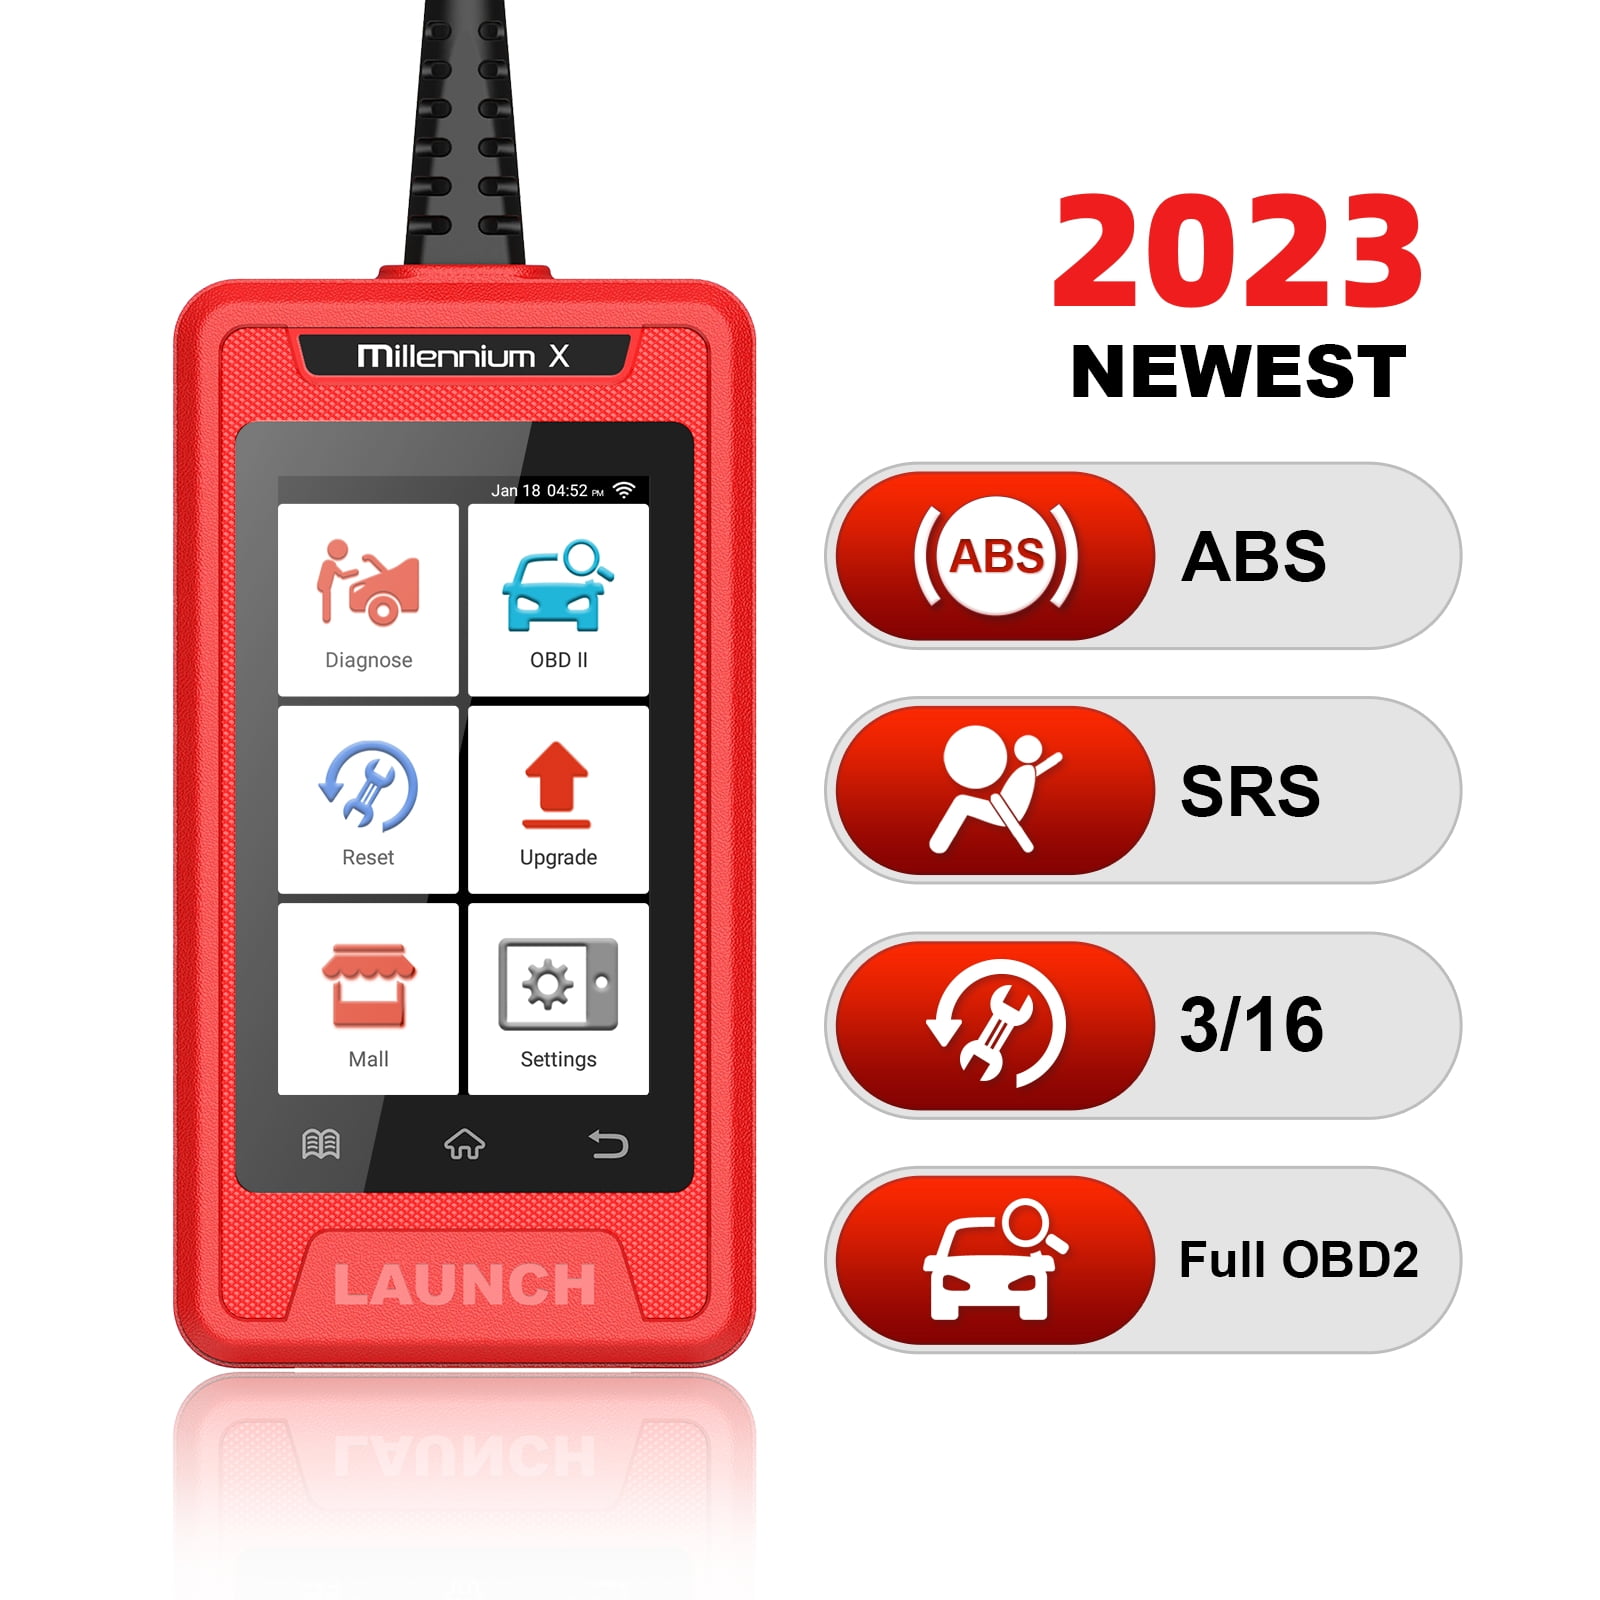 LAUNCH Millennium X OBD2 Scanner,ABS/SRS Car Diagnostic Tool, Oil